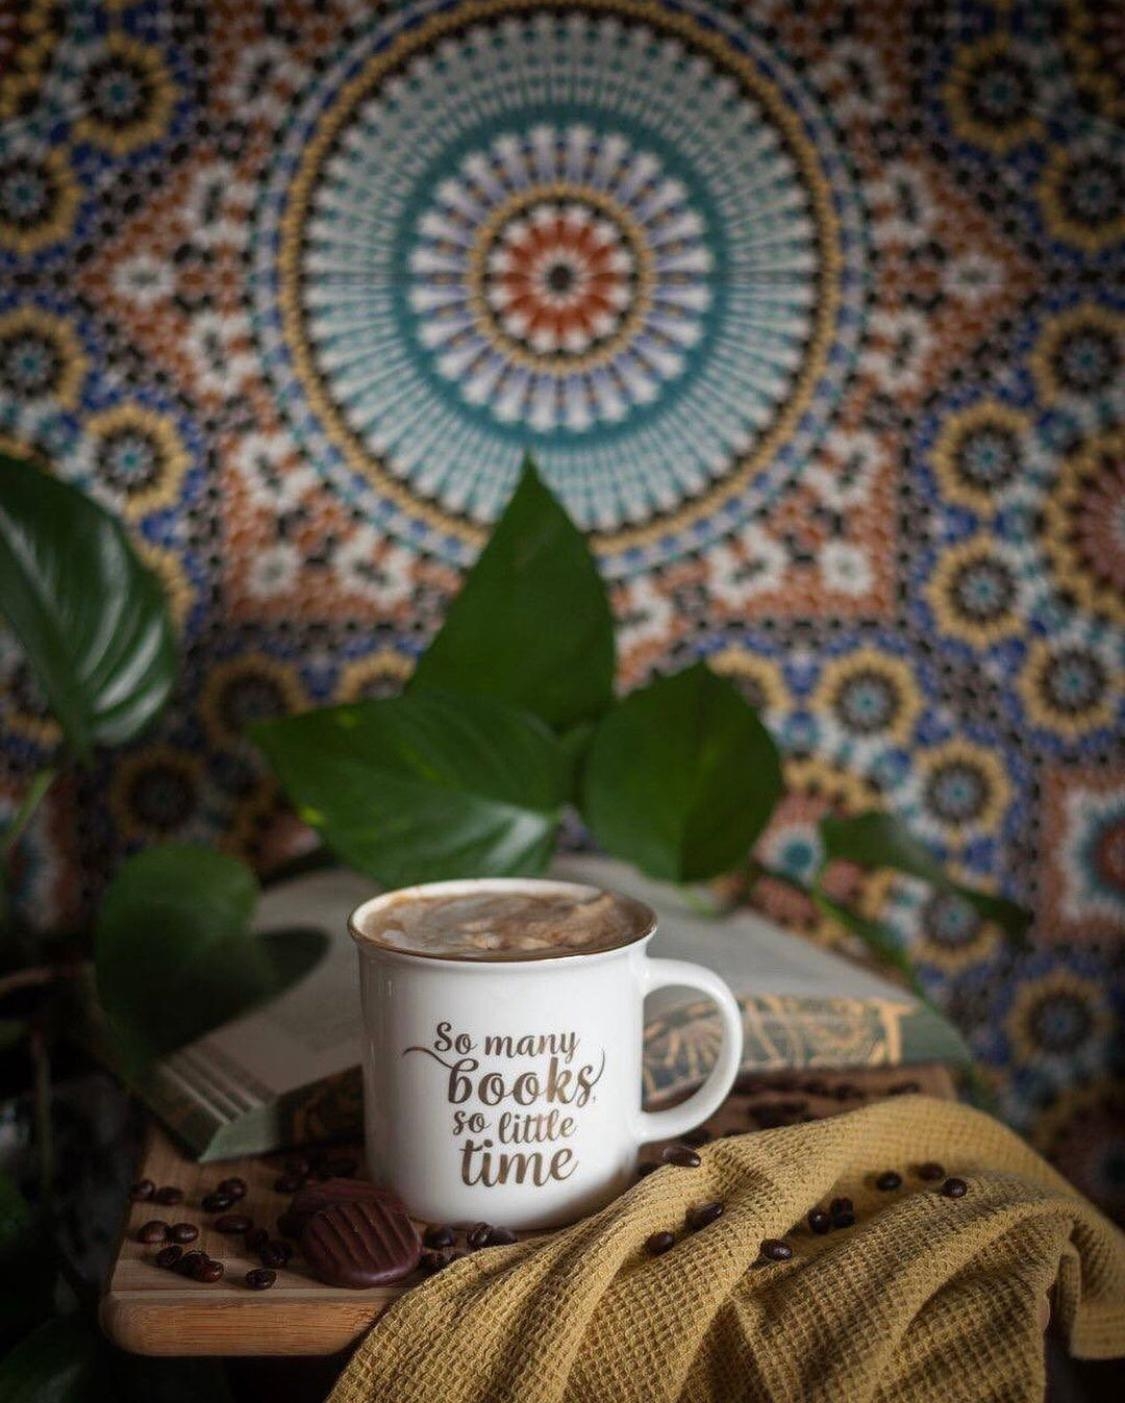 #küche #fliesenspiegel #marokkanischefliesen #kaffee #bücher #lieblingstasse #weihnachtsgeschenk 